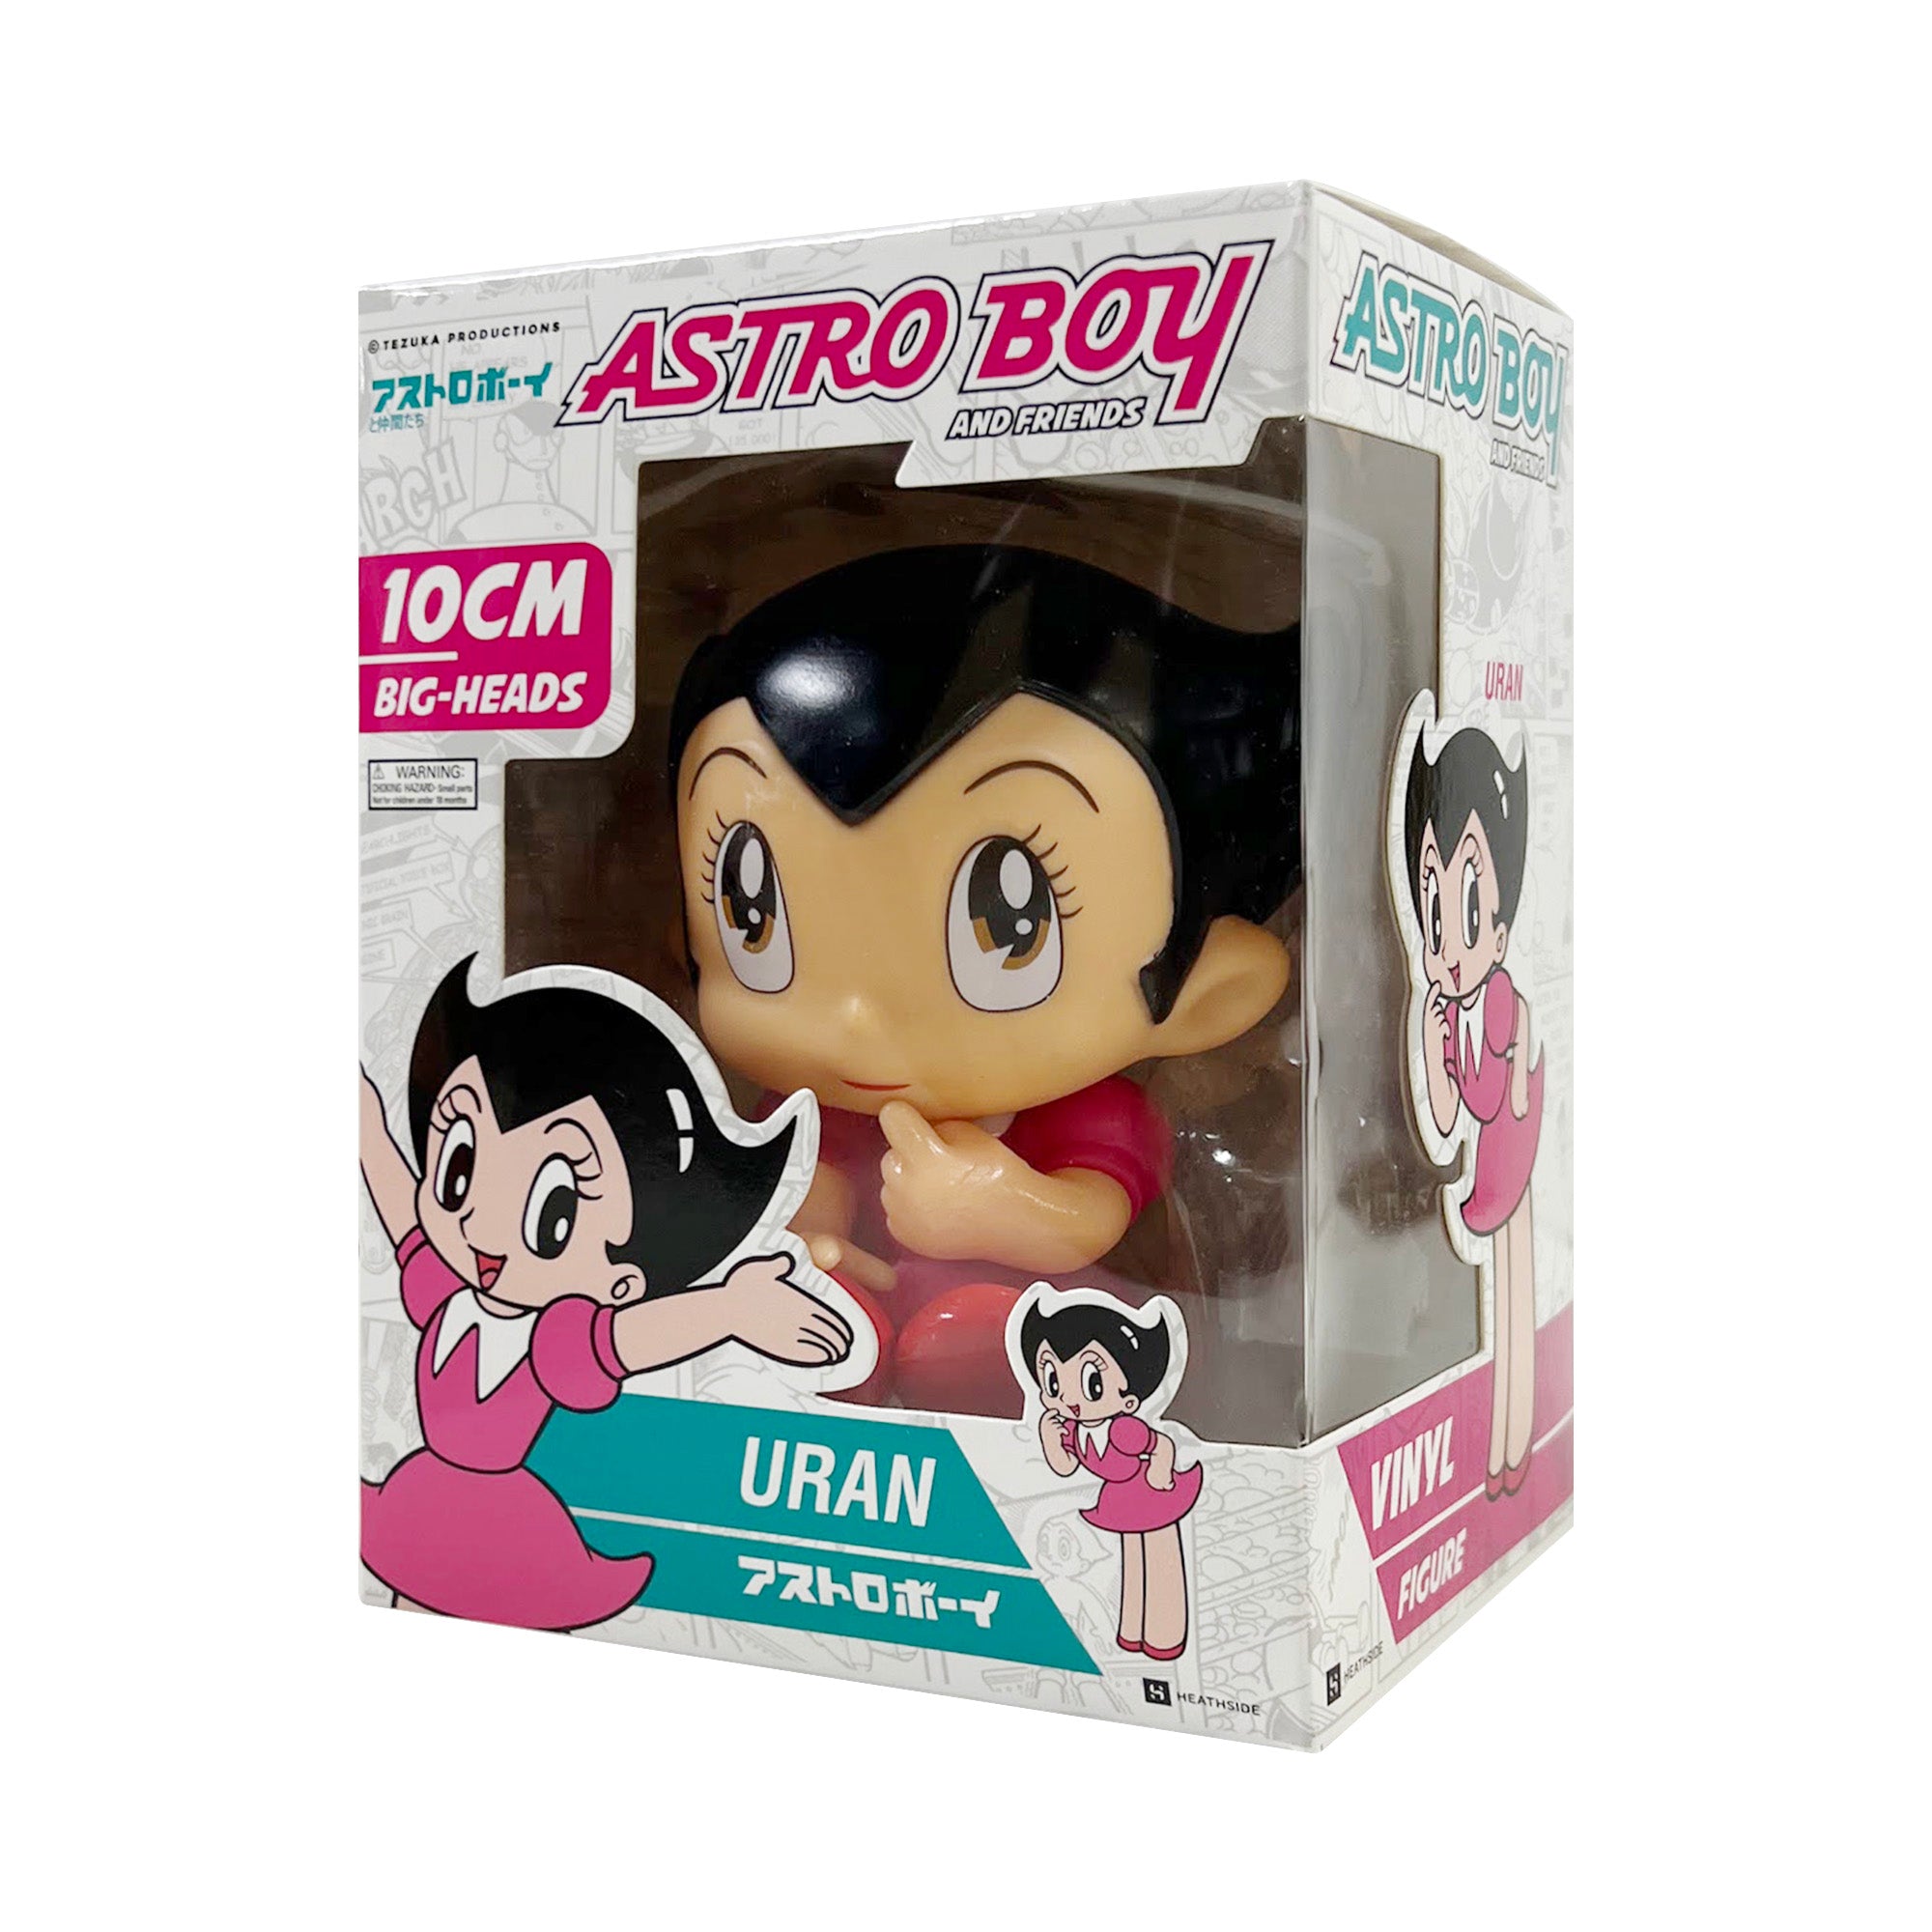 astro boy and uran